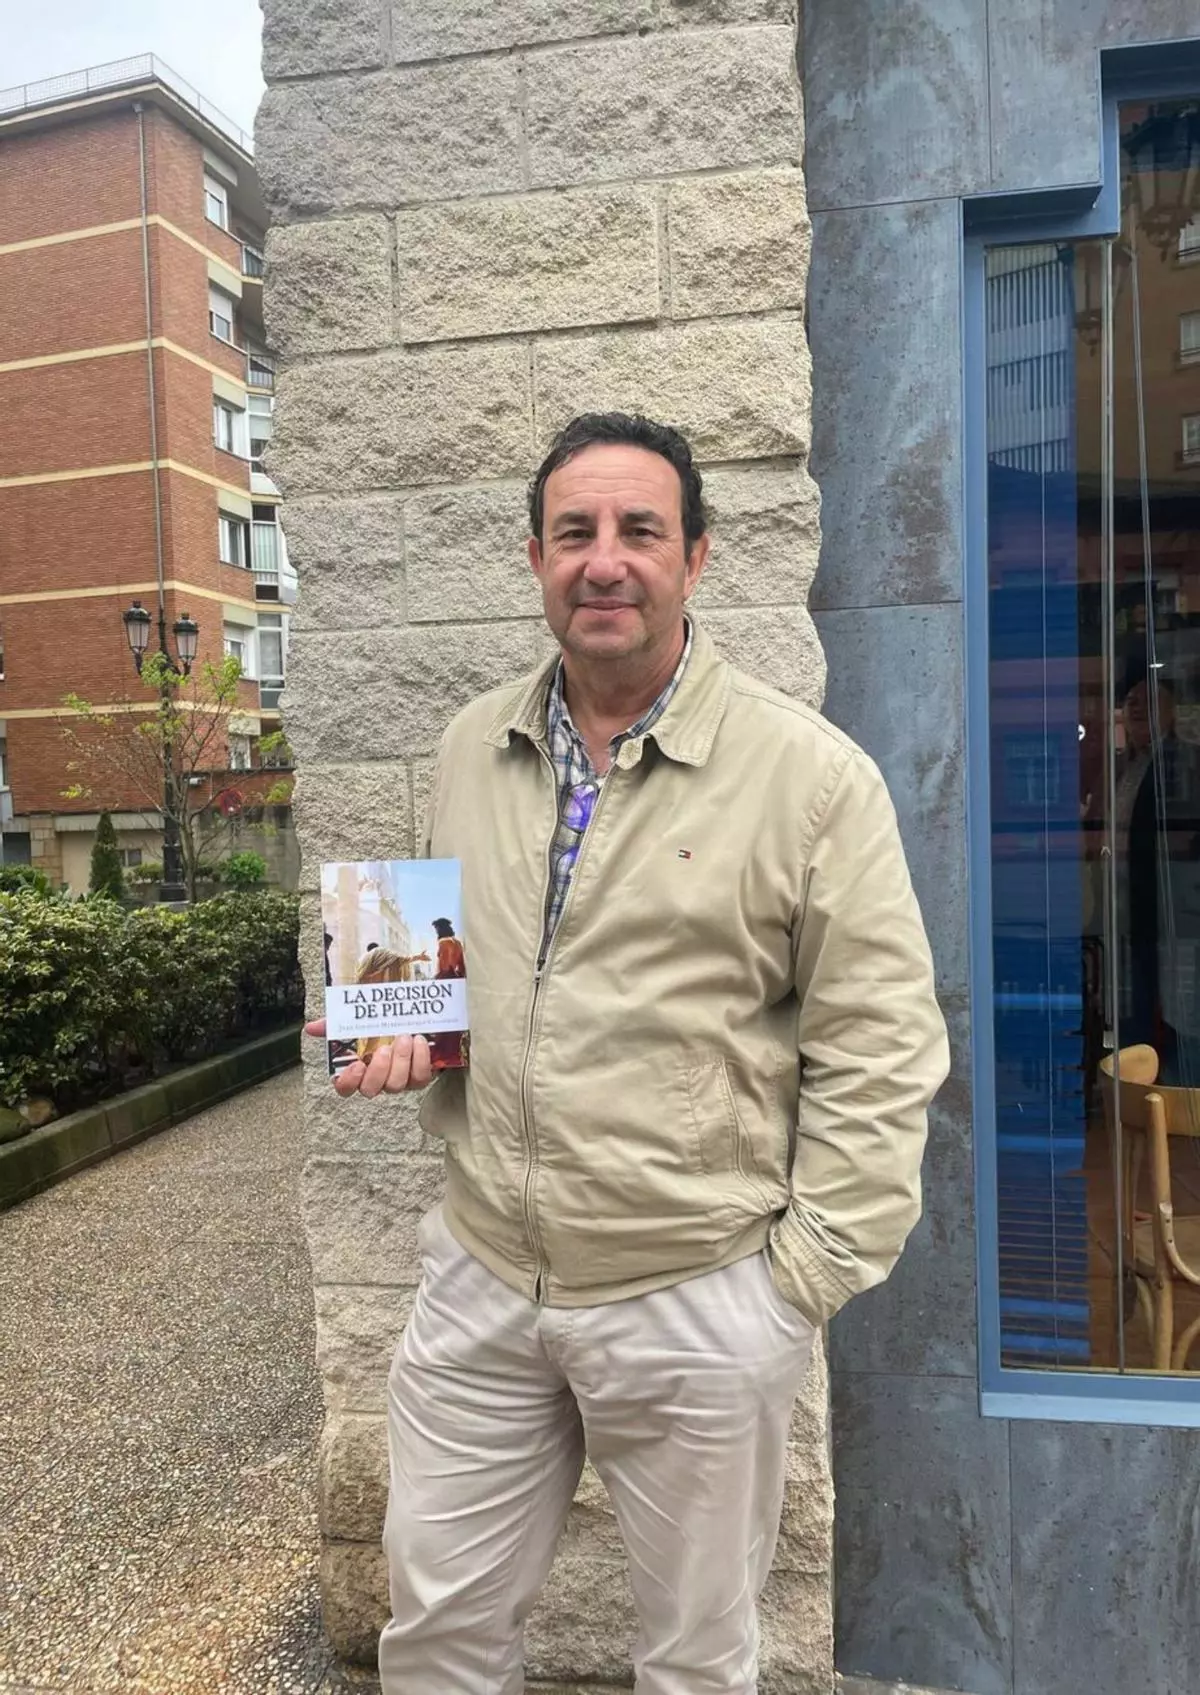 Juan Antonio Moreno-Luque, magistrado, autor de "La decisión de Pilato": "El juicio de Pilato a Cristo fue el primero influido por las masas"